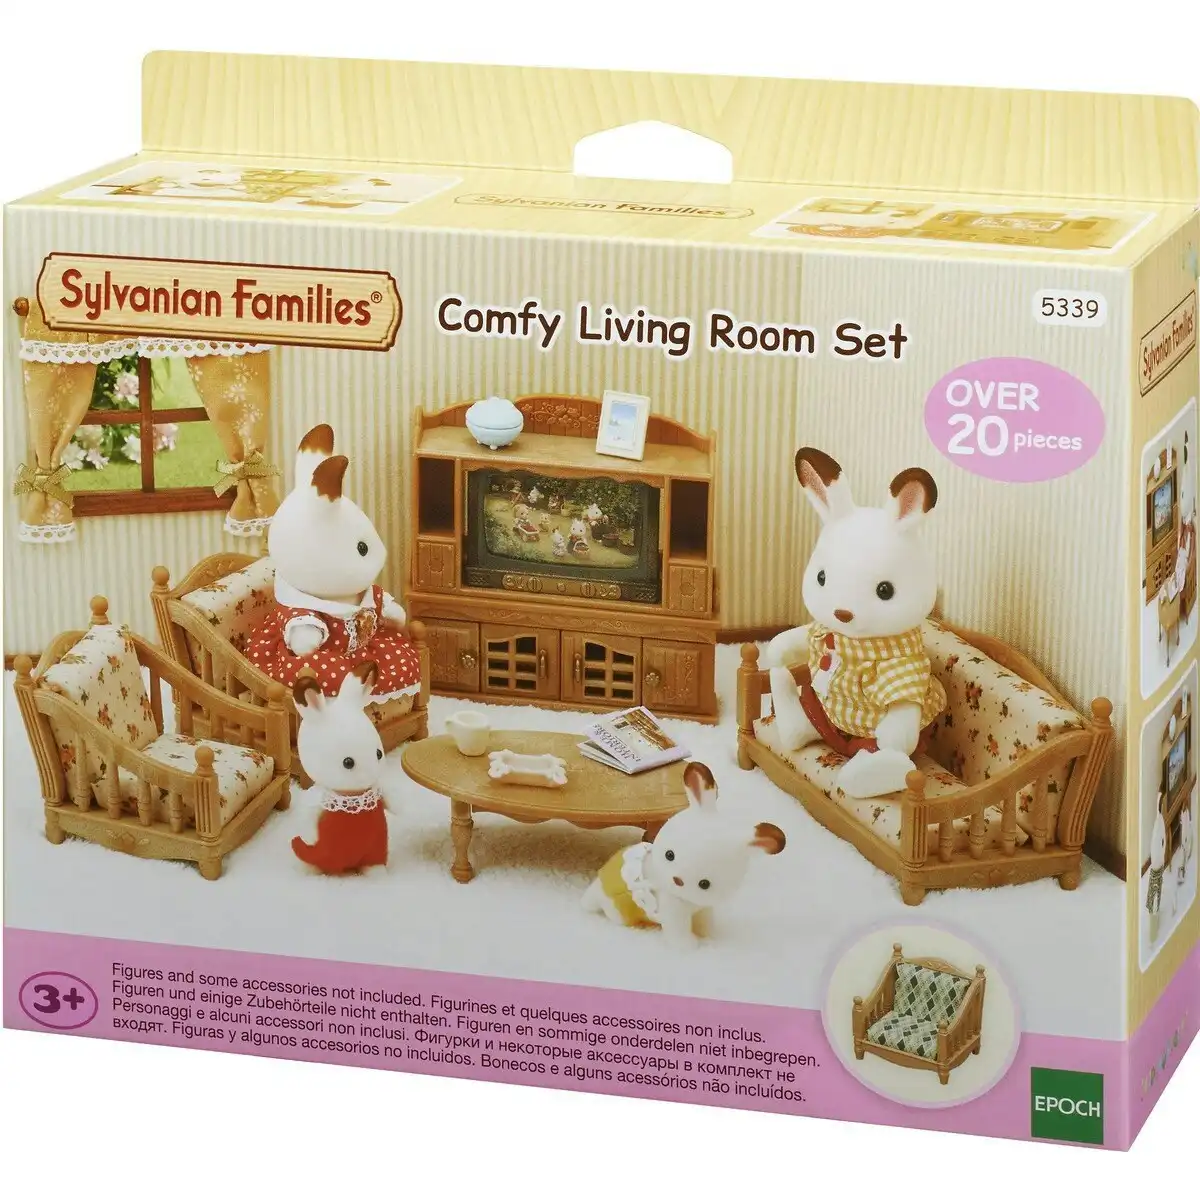 Sylvanian Families Comfy Living Room Set